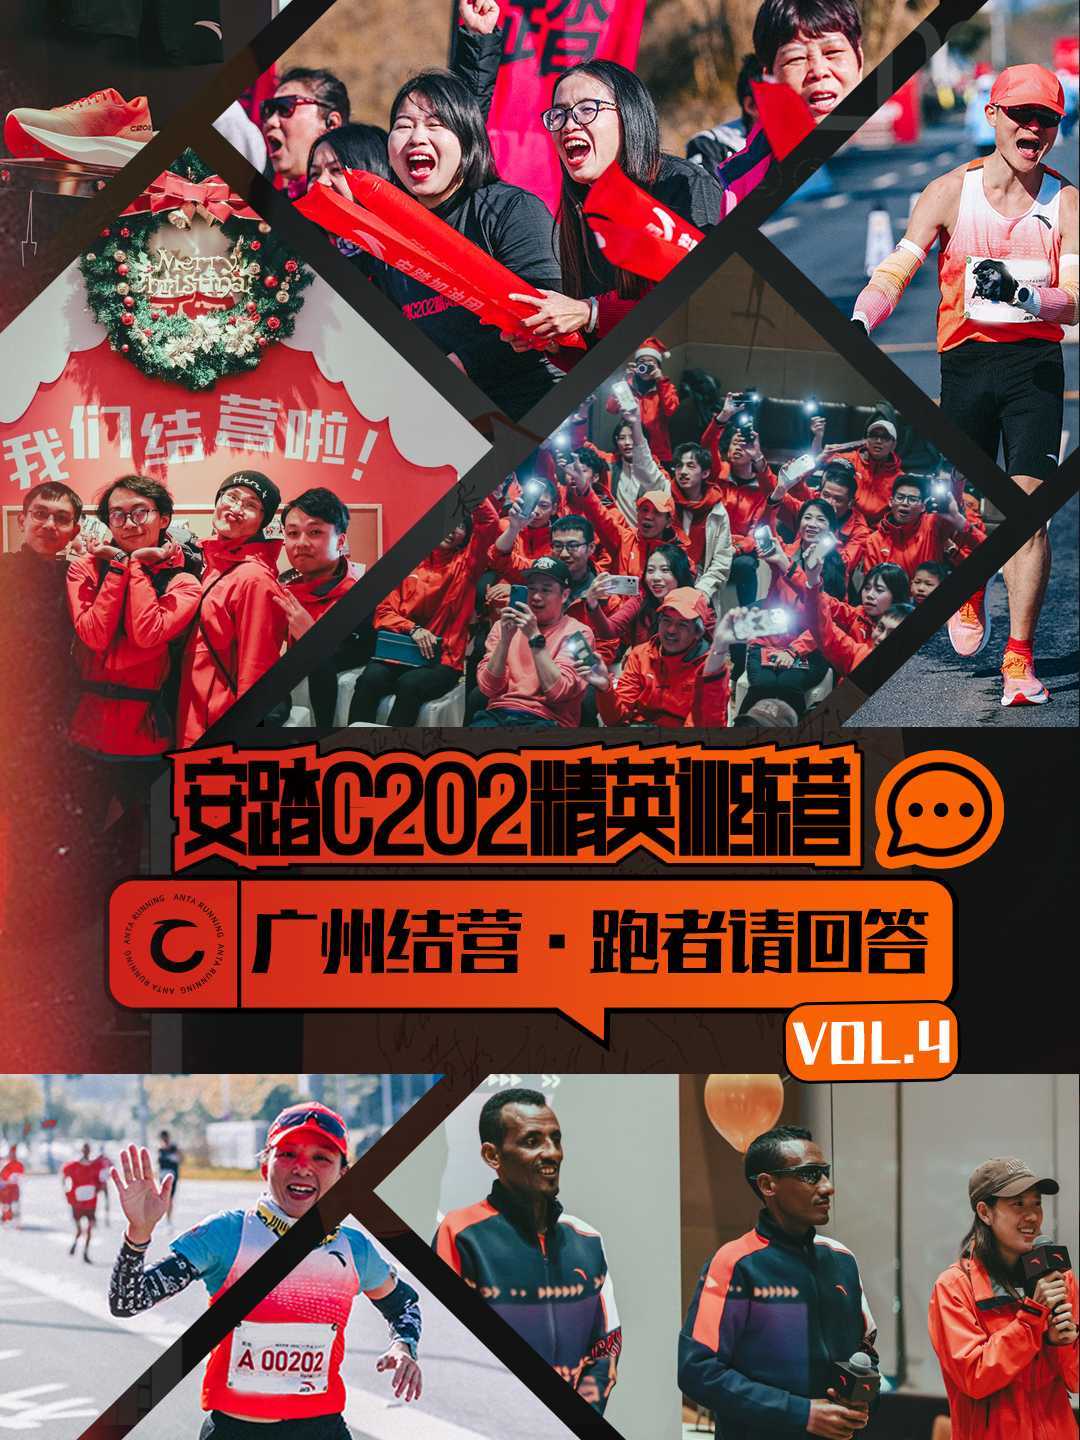 安踏C202精英训练营•广州站VOL.4广州结营•跑者请回答